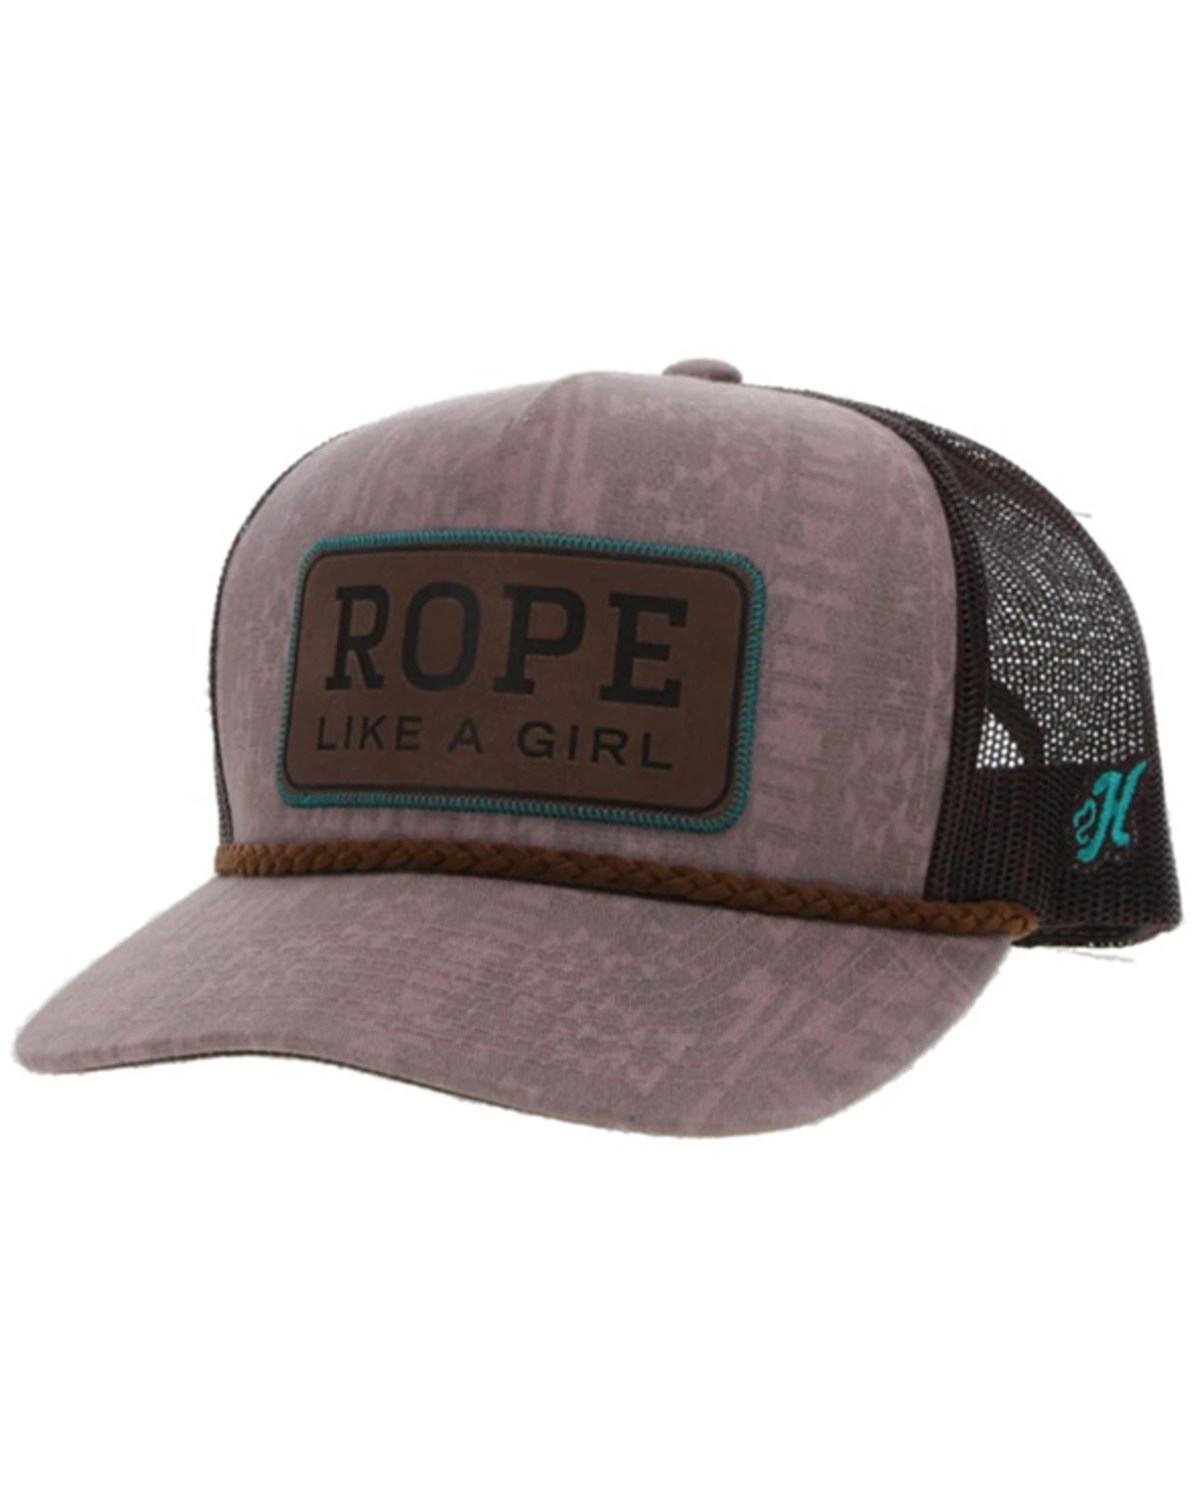 Hooey Women's Rope Like a Girl Trucker Cap